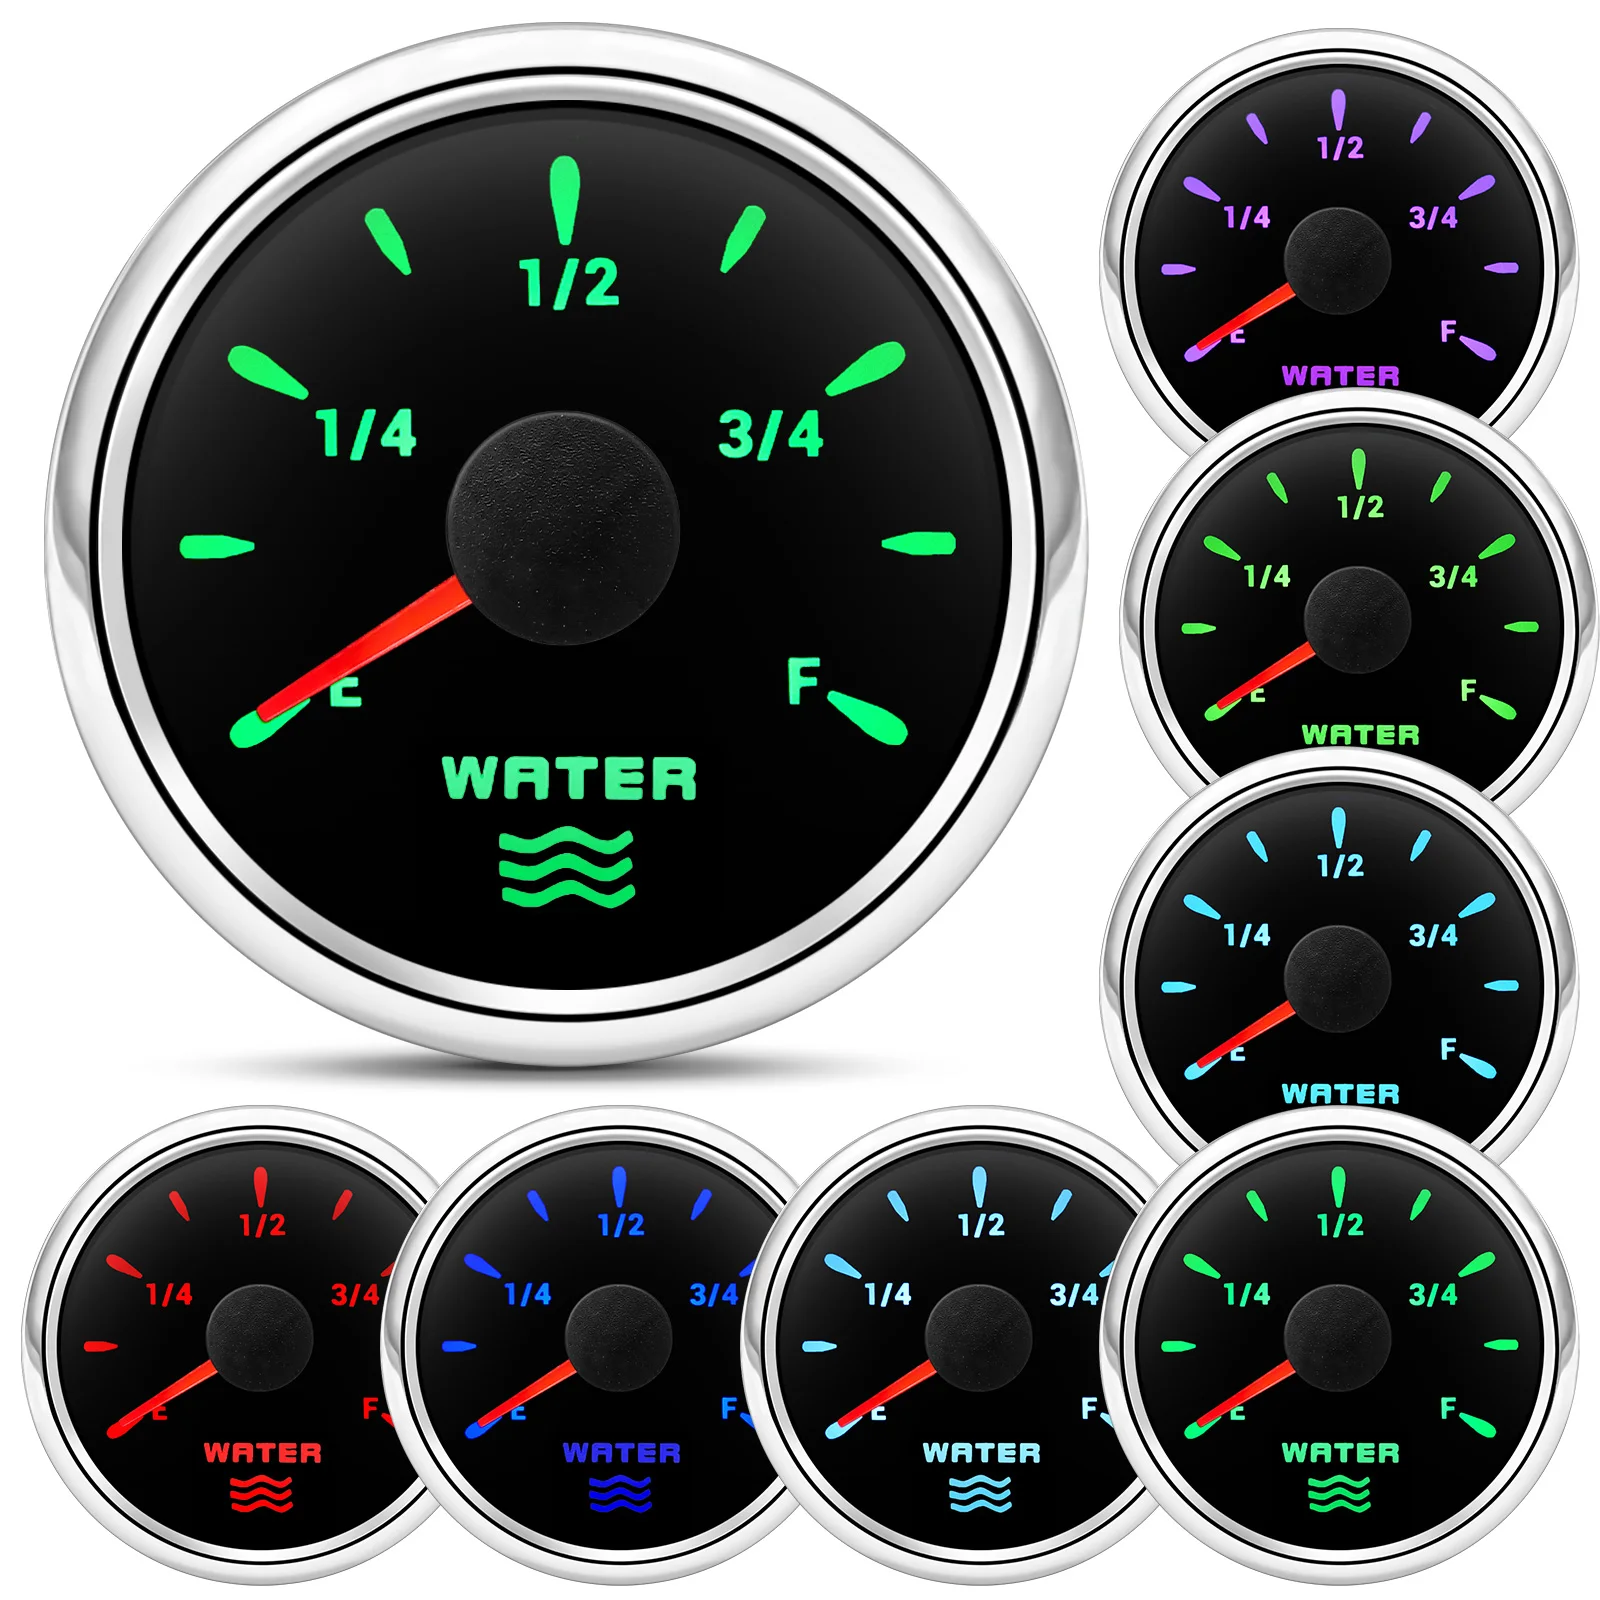 0-190 Ом Датчик уровня воды 52 мм Датчик уровня воды с 7-цветной подсветкой Индикатор счетчика воды в резервуаре Бензин Лодка Авто 12 В 24 В - 1